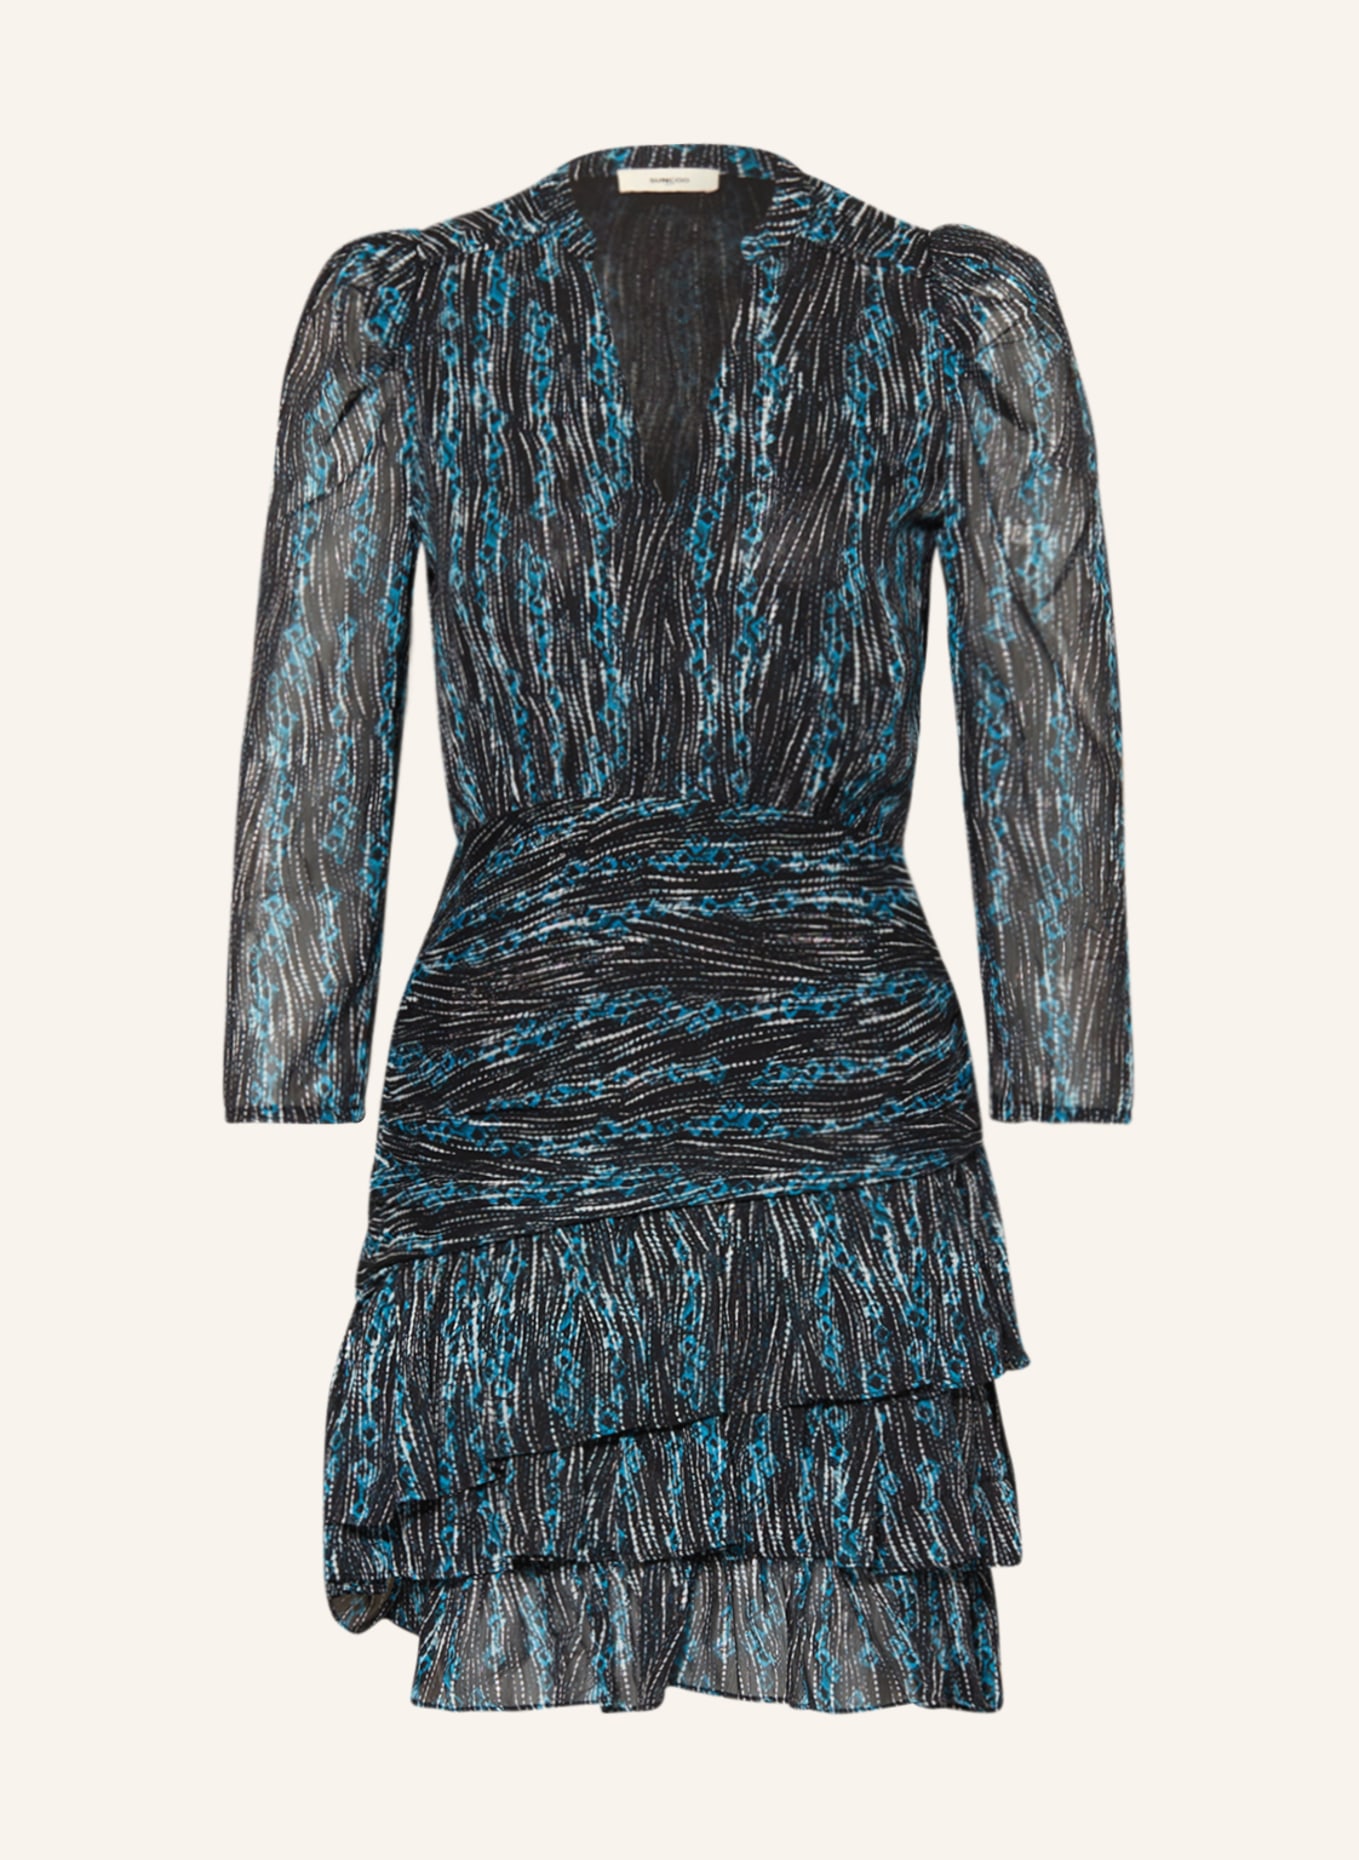 SUNCOO Kleid CALISTE mit 3/4-Arm und Glitzergarn, Farbe: NEONBLAU/ DUNKELBLAU/ WEISS (Bild 1)